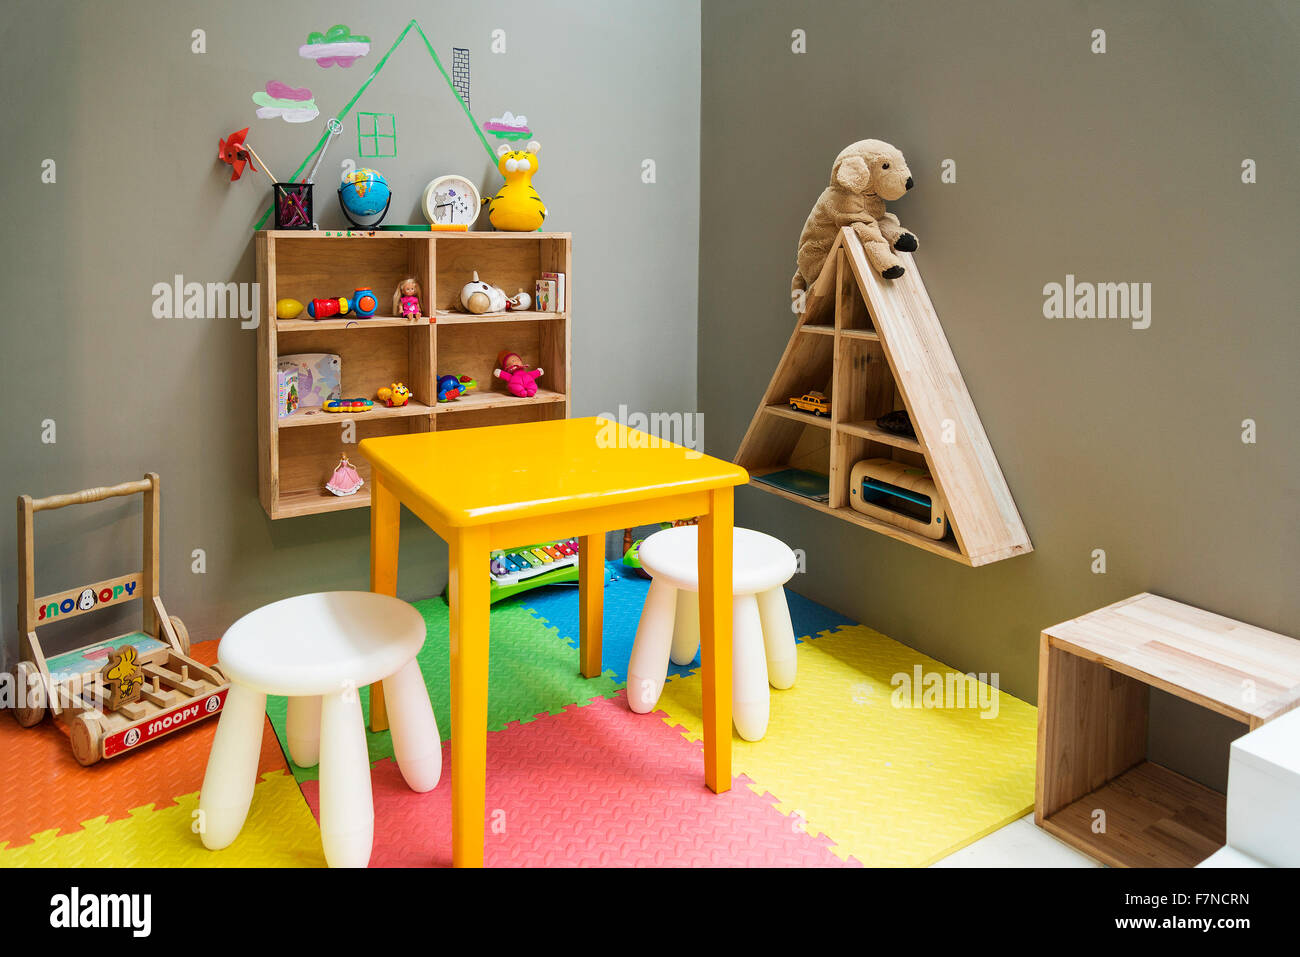 Les enfants Aire de jeux pour enfants avec des jouets et des meubles Banque D'Images